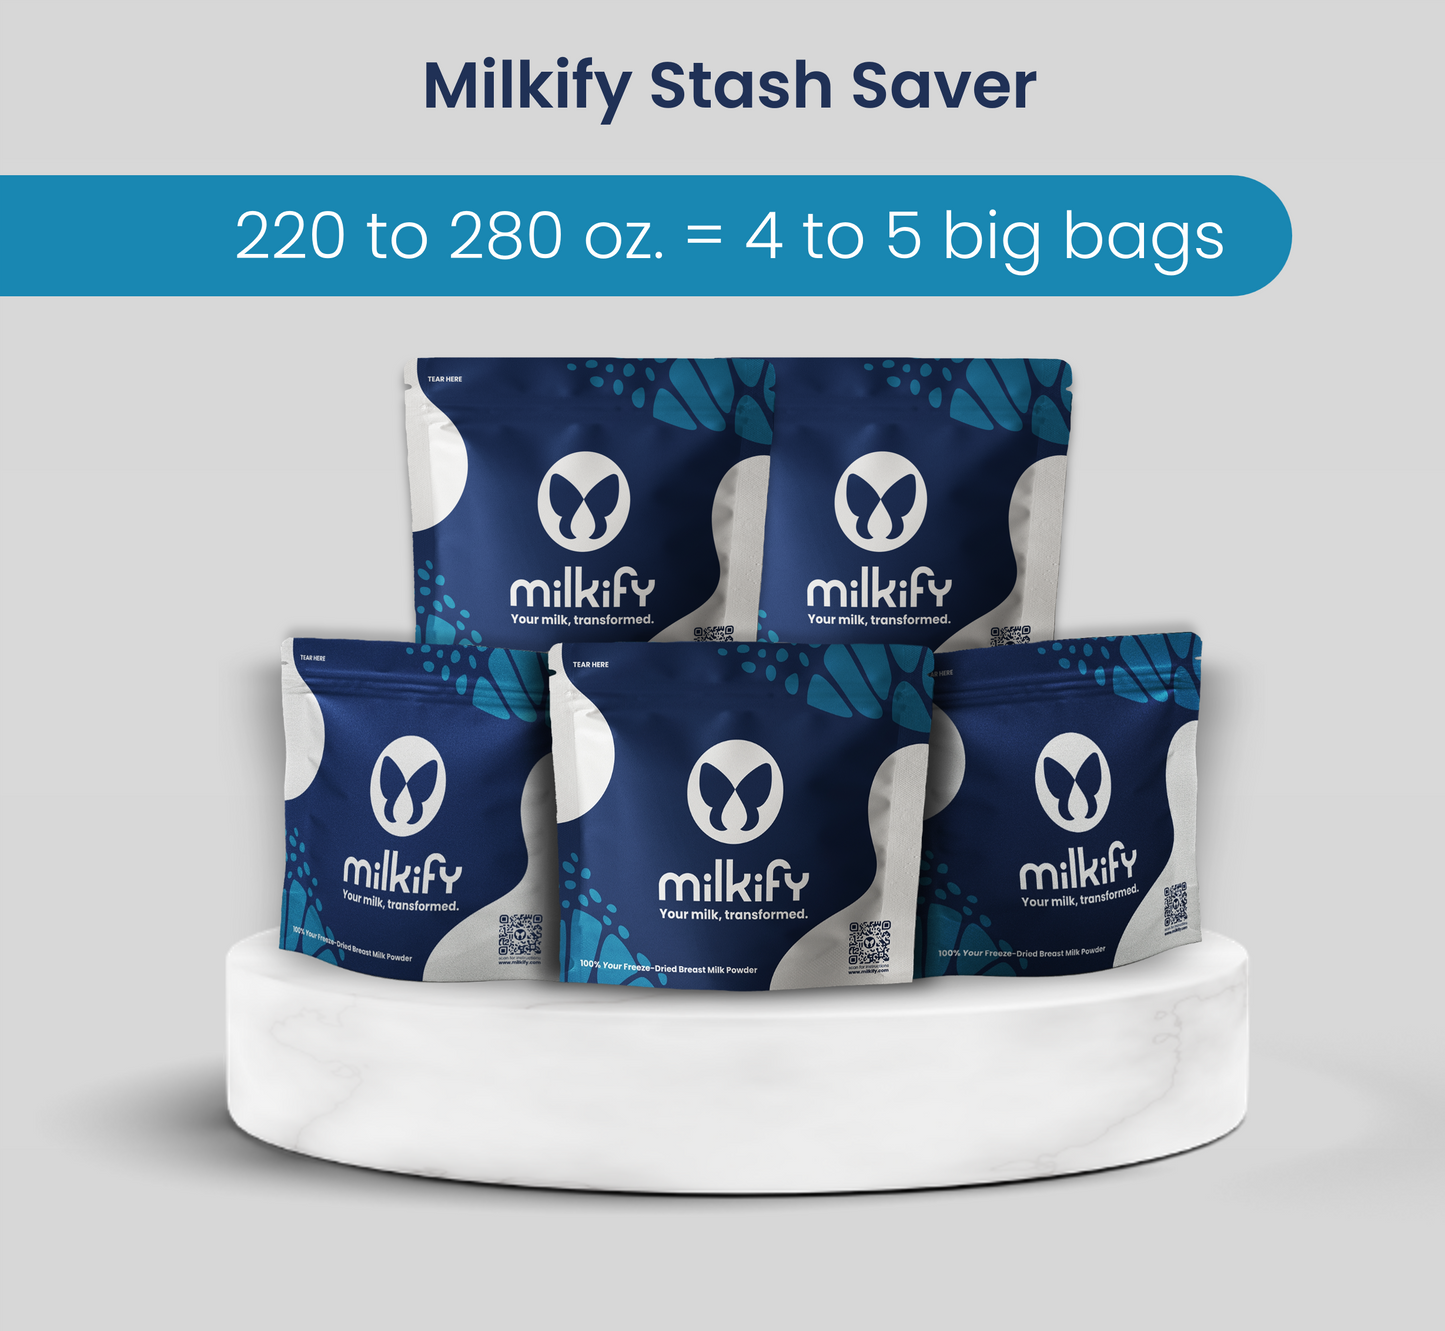 milkify_stash_saver